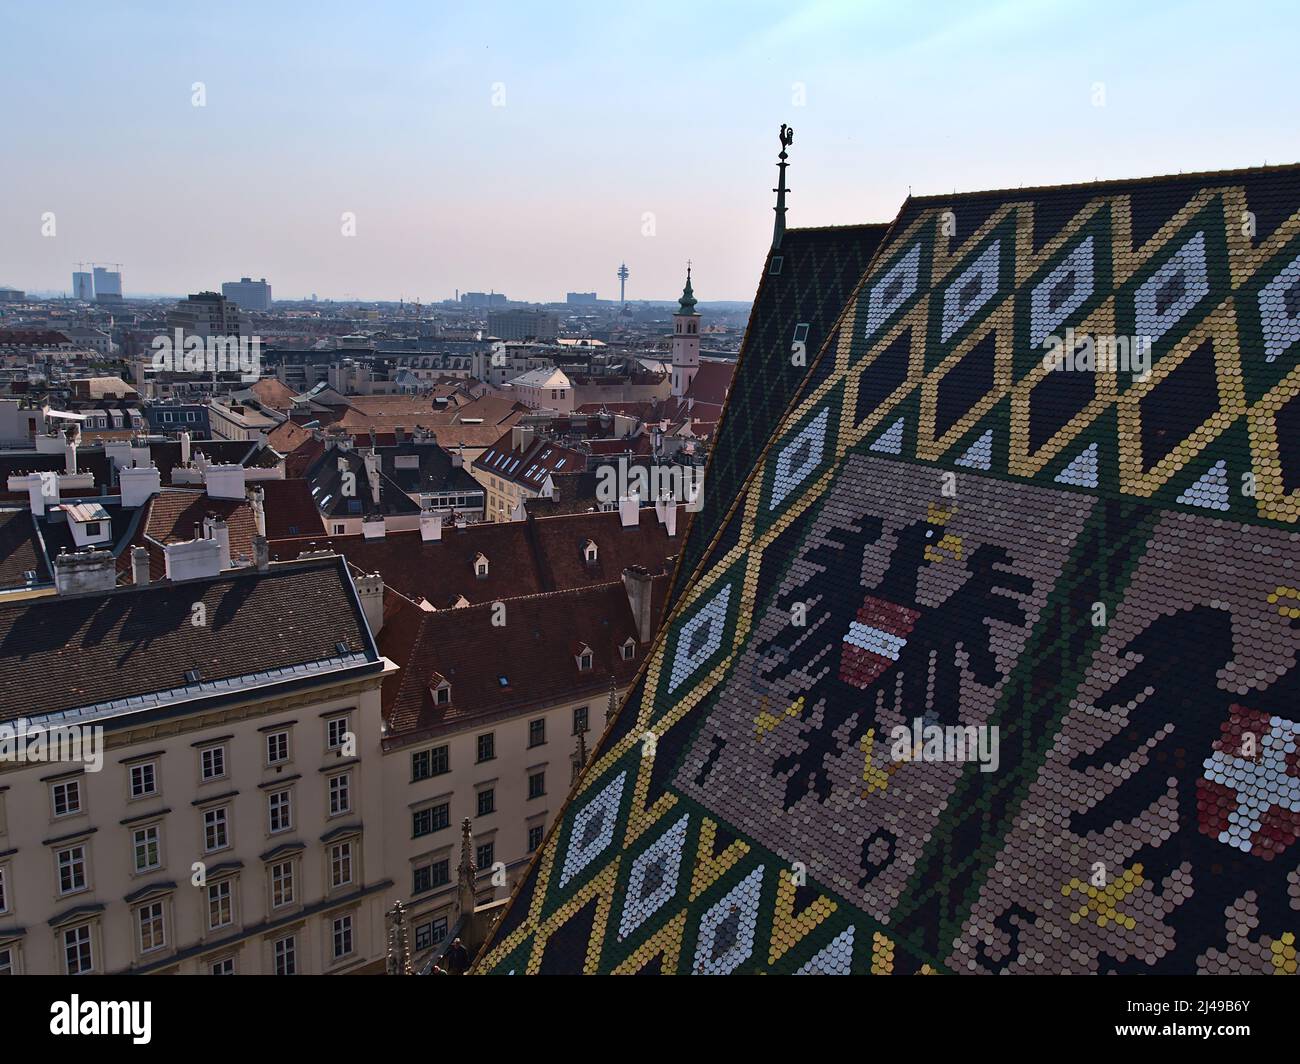 Schöner Blick über die historische Innenstadt von Wien, Österreich mit dem berühmten Ziegeldach des Stephansaner Doms mit Wappen. Stockfoto